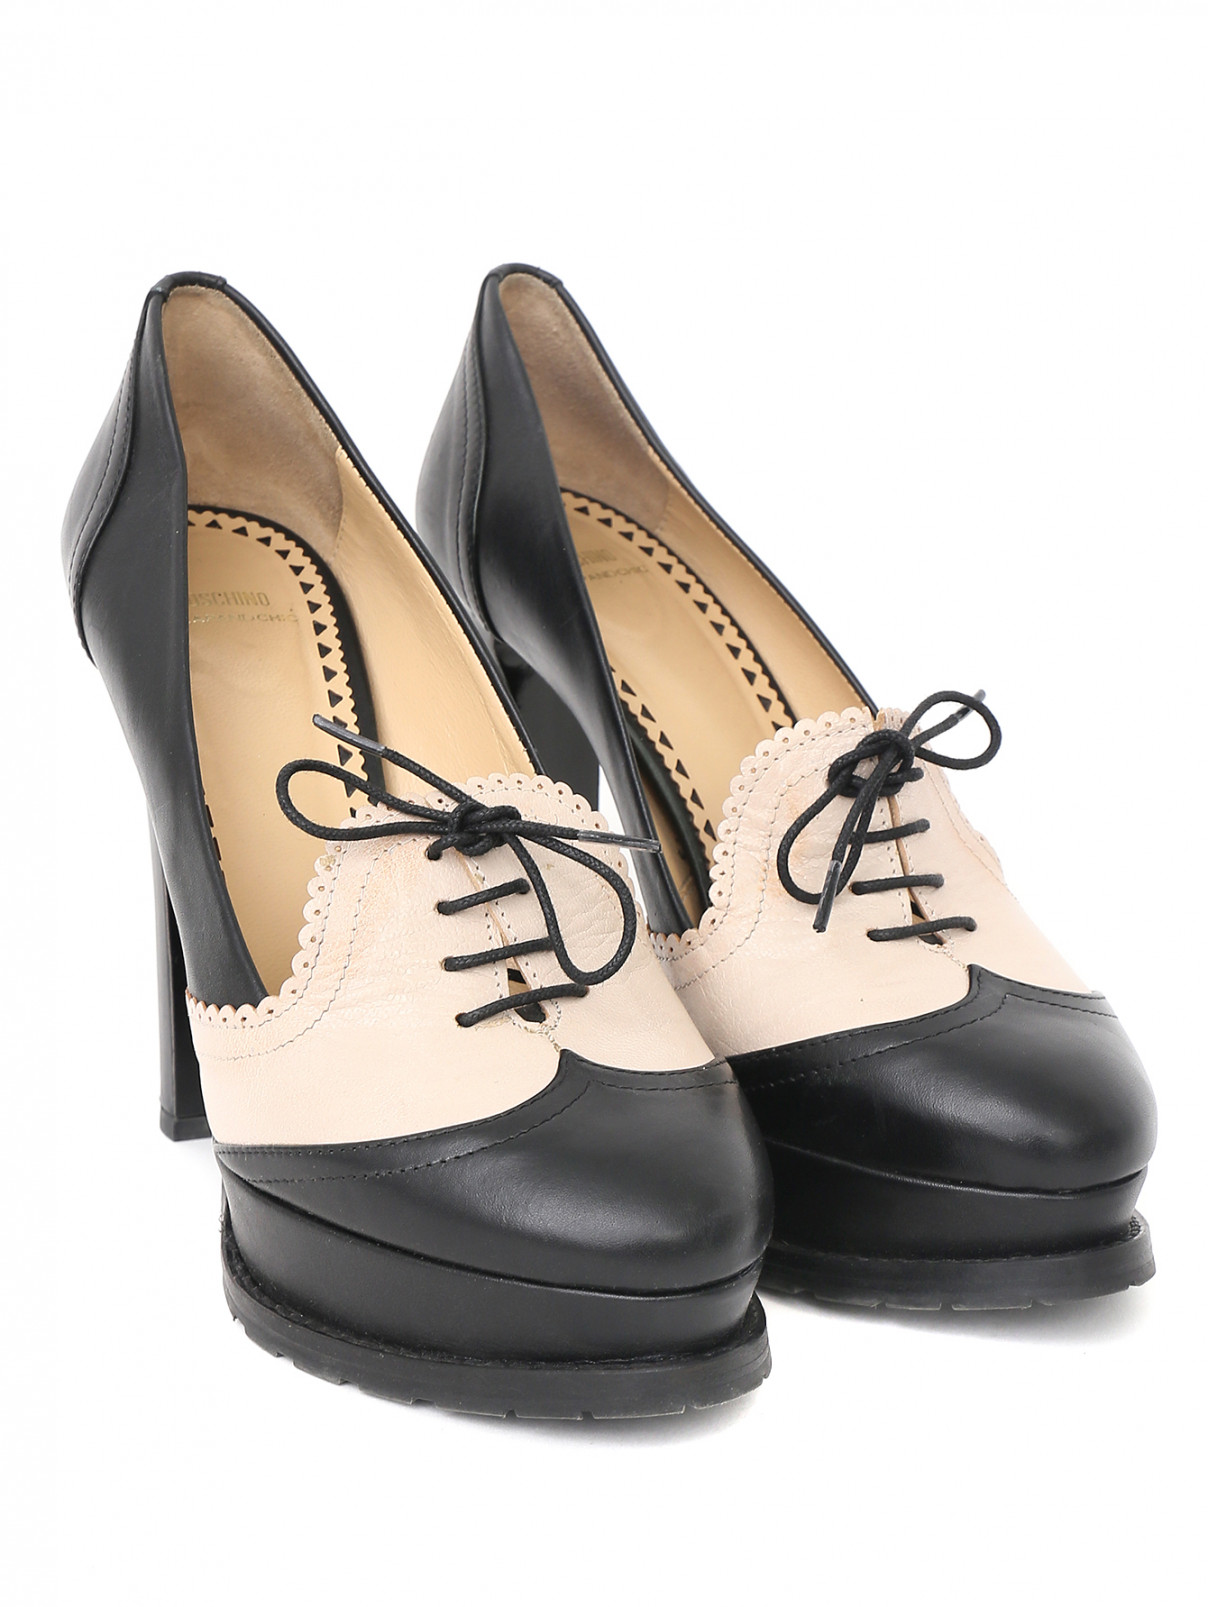 Туфли из кожи с контрастной отделкой на высоком каблуке Moschino Cheap&Chic  –  Общий вид  – Цвет:  Черный